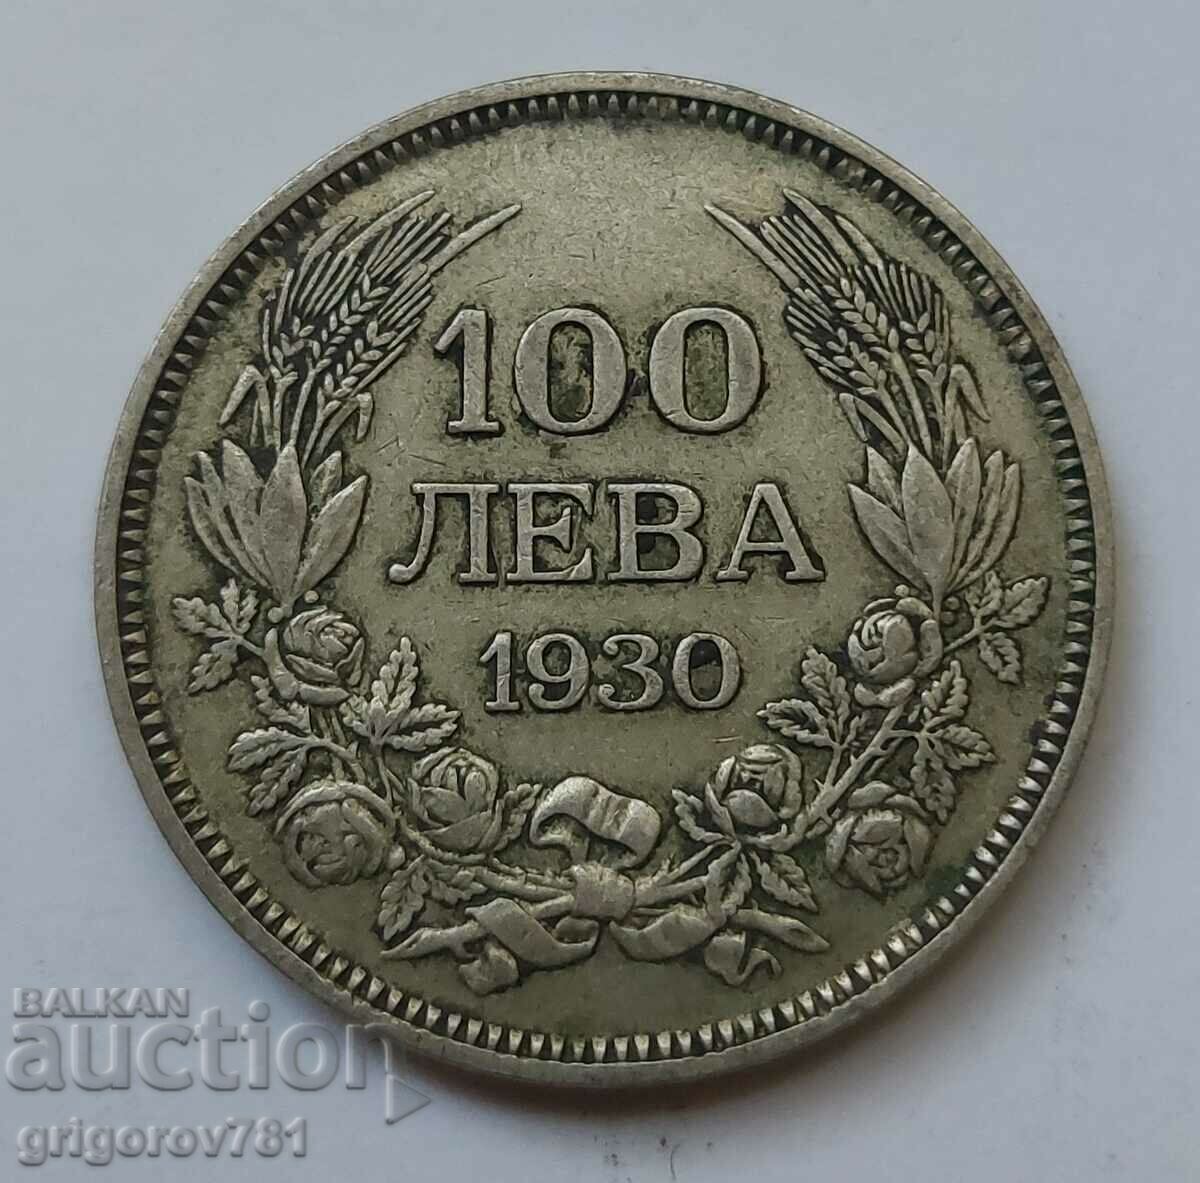 Ασήμι 100 λέβα Βουλγαρία 1930 - ασημένιο νόμισμα #19